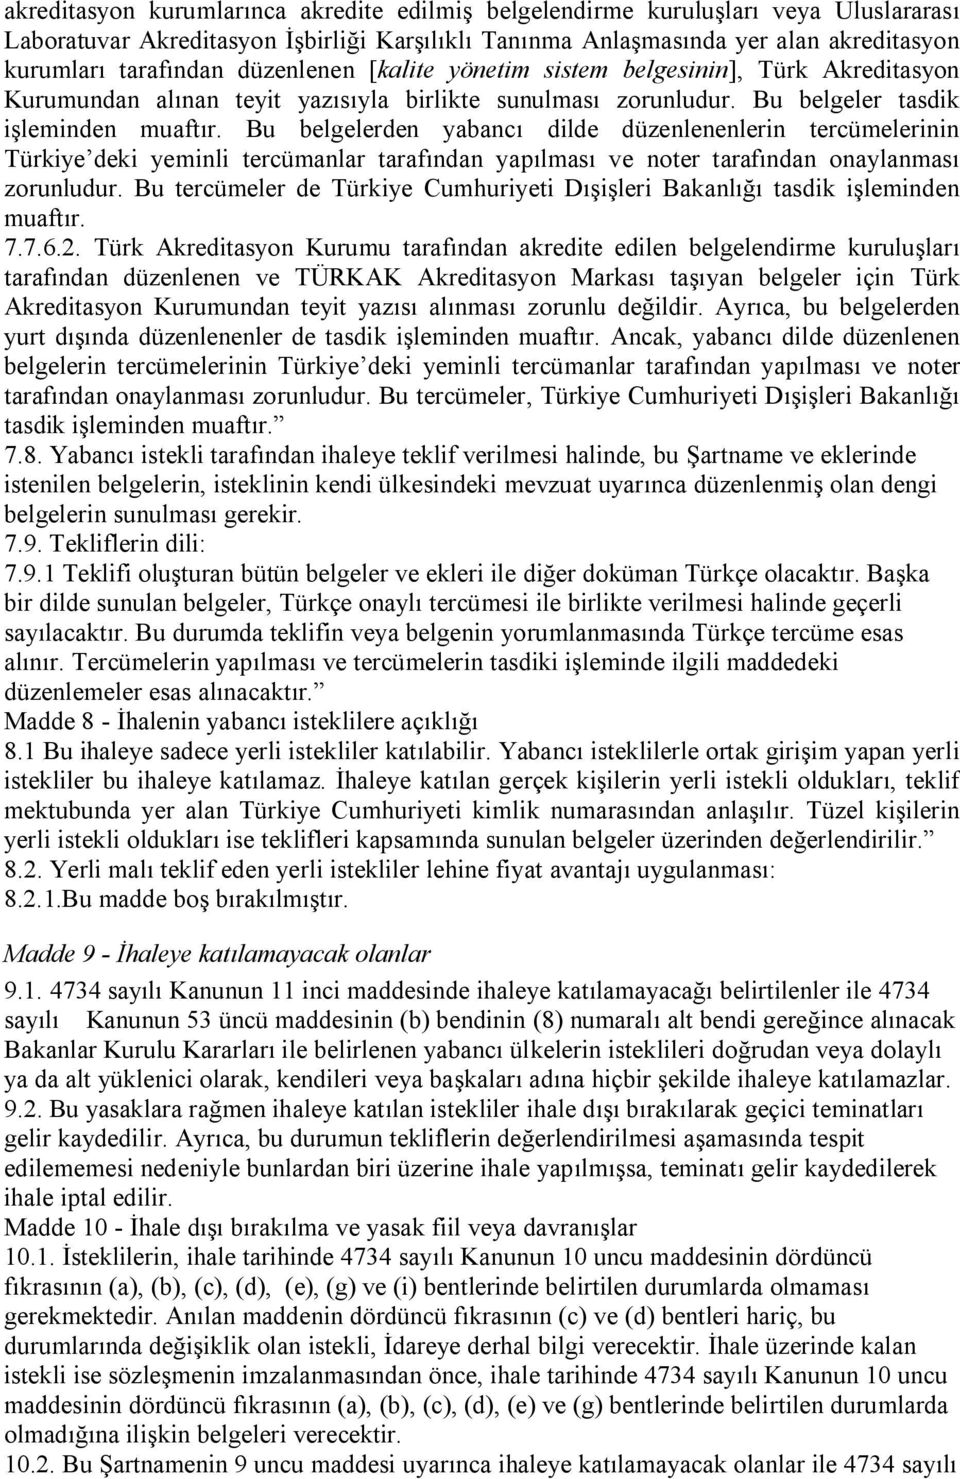 Bu belgelerden yabancı dilde düzenlenenlerin tercümelerinin Türkiye deki yeminli tercümanlar tarafından yapılması ve noter tarafından onaylanması zorunludur.